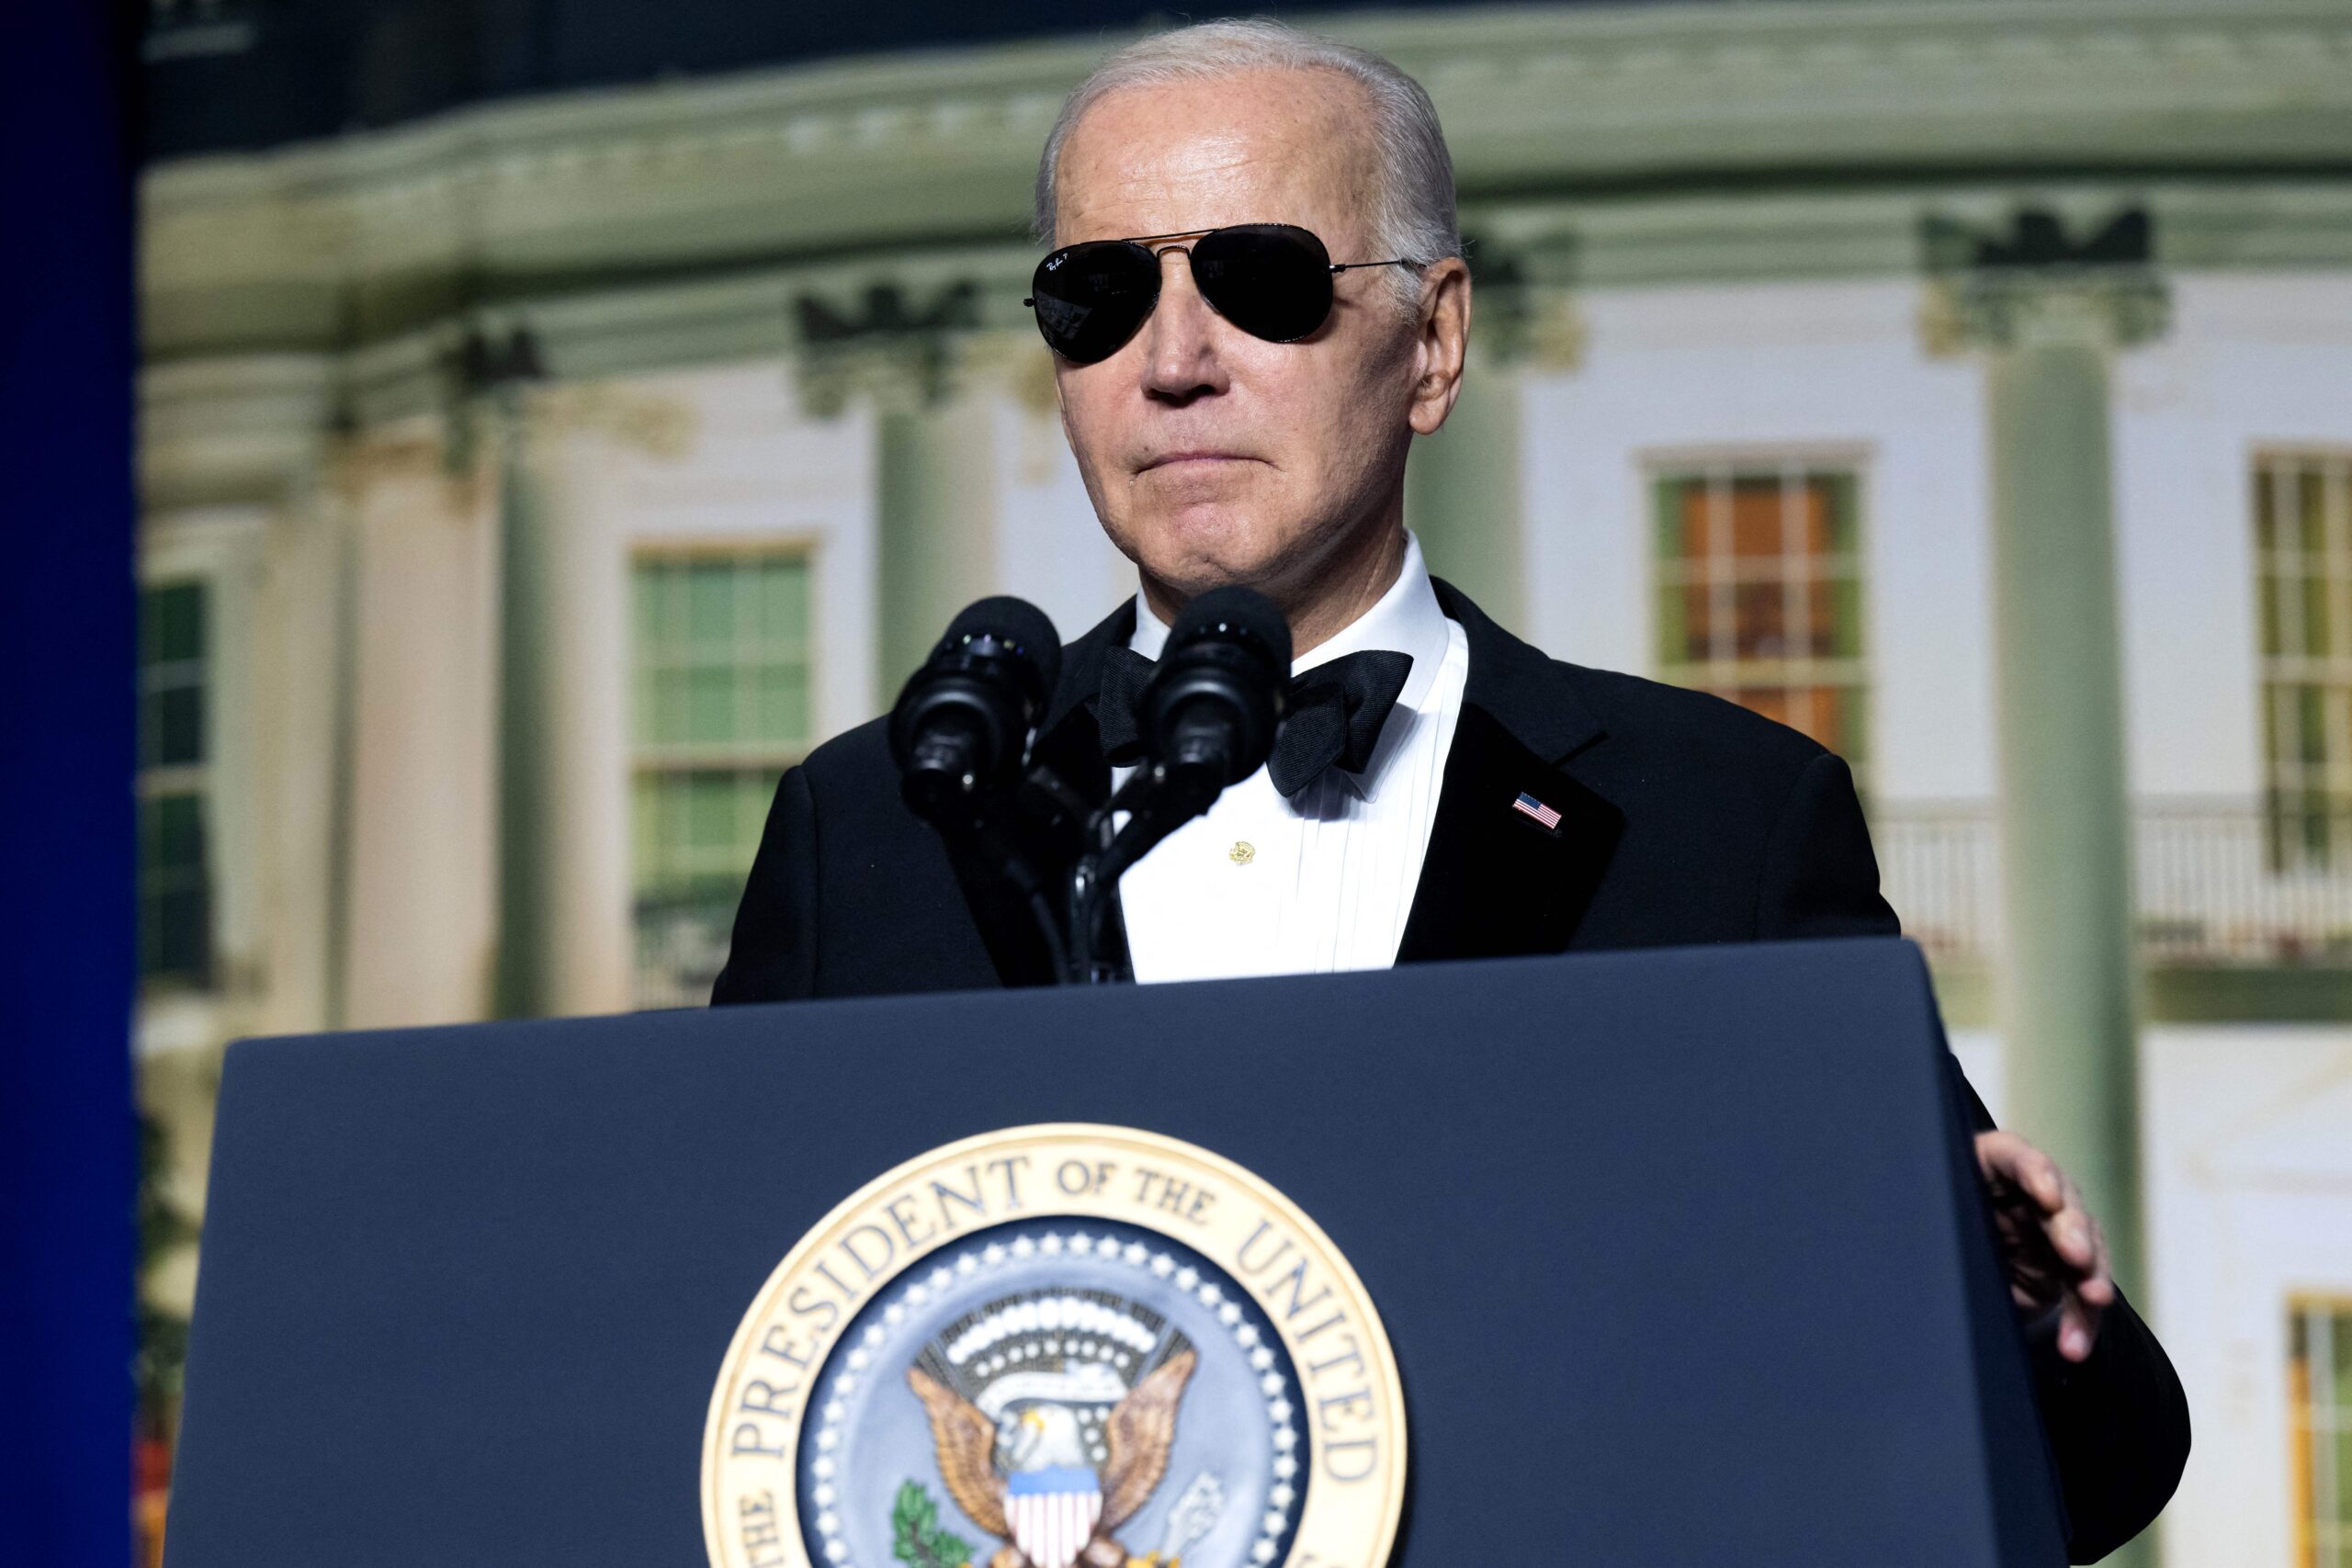 L’âge, le ciel bleu et cette question persistante de “Joe Biden est-il trop vieux?”